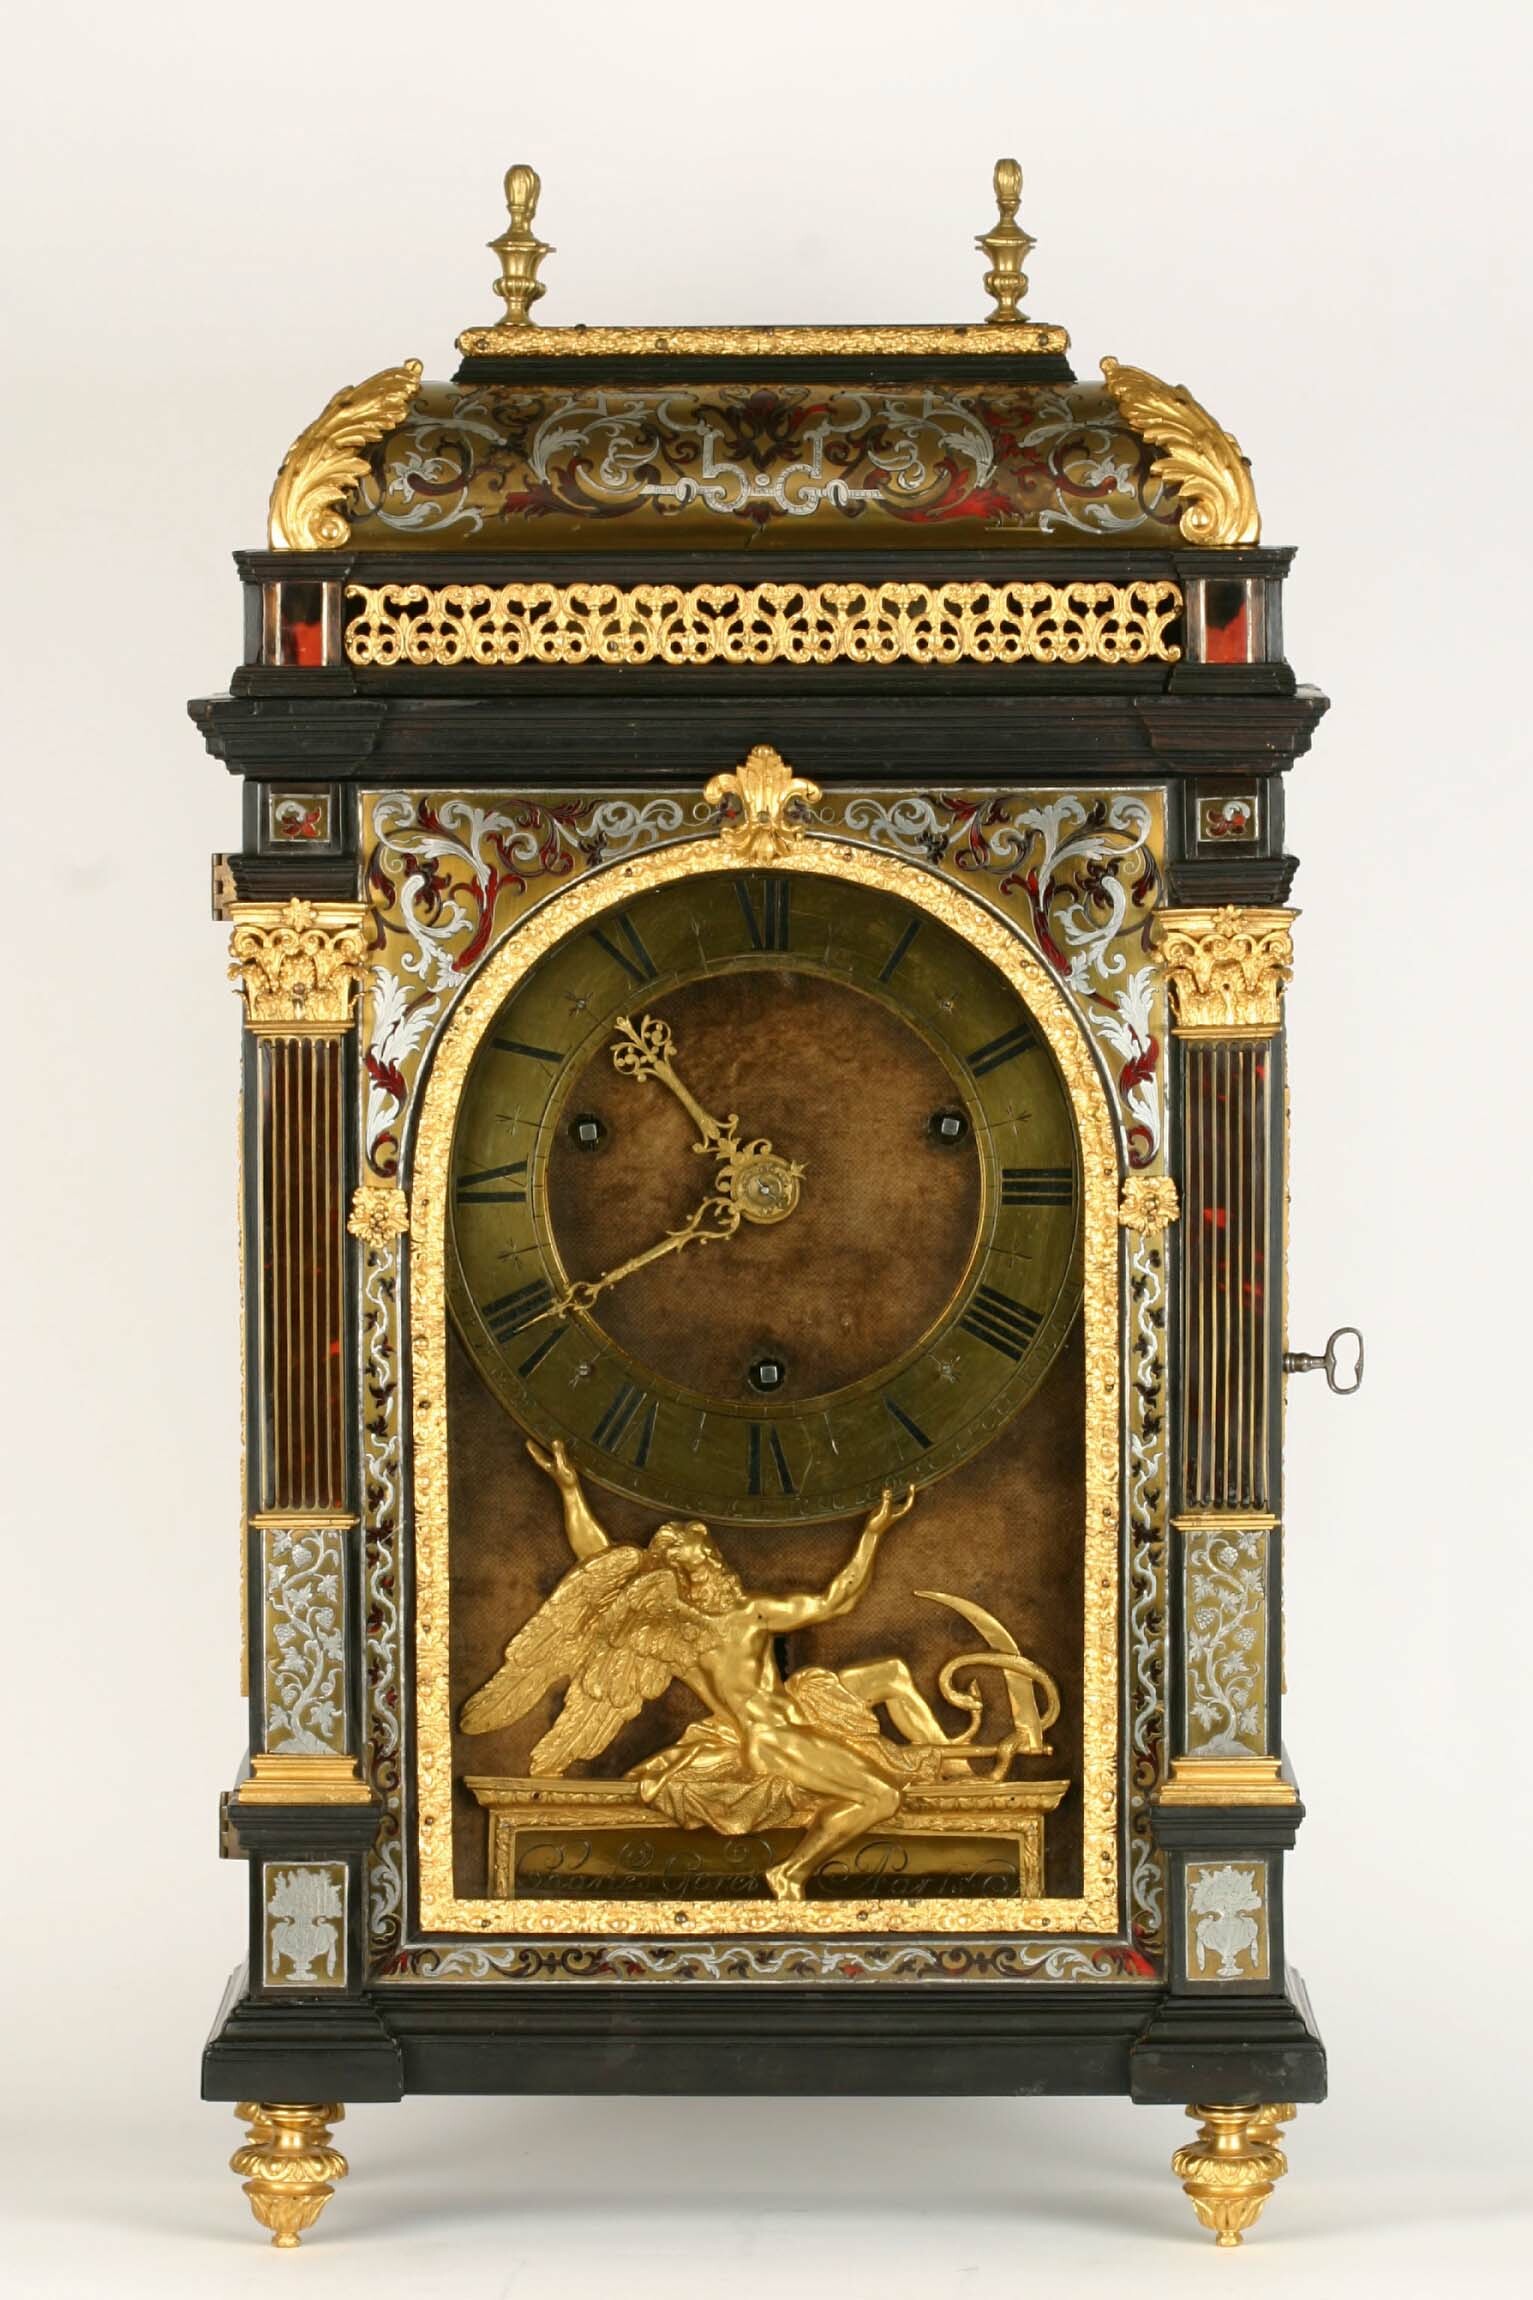 Tischuhr, Réligieuse, Charles Goret, Paris, Ende 17. Jahrhundert (Deutsches Uhrenmuseum CC BY-SA)